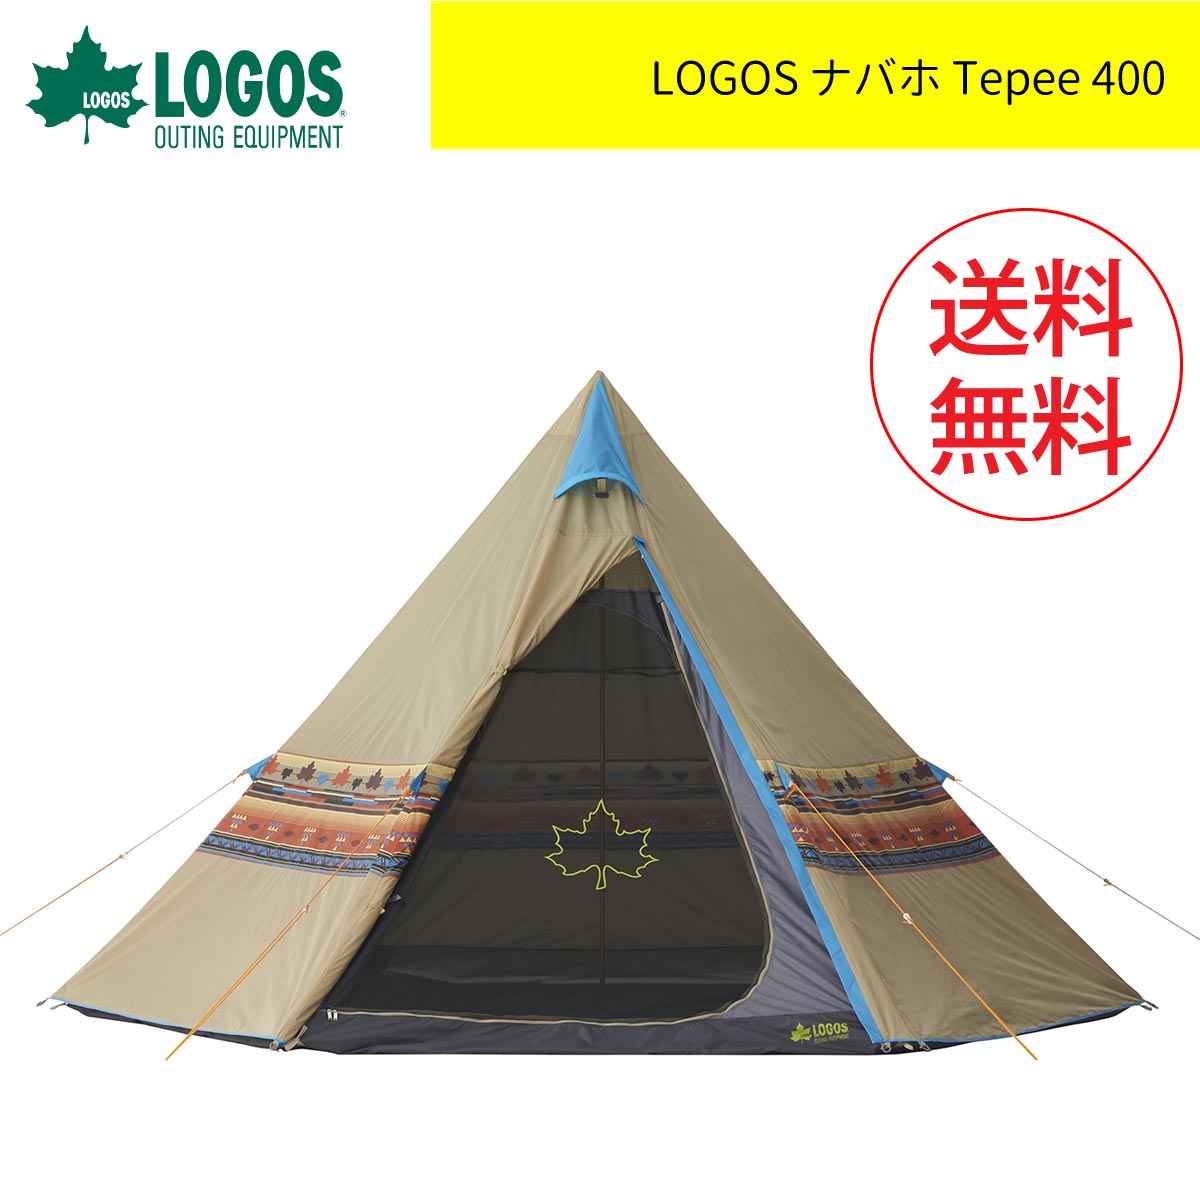 LOGOS ロゴス ナバホ Tepee 400 ワンポールテント ティピーテント 大型テント ファミリー キャンプ用品 アウトドア用品 家族 ワンポール テント ファミキャン ファミリーキャンプ